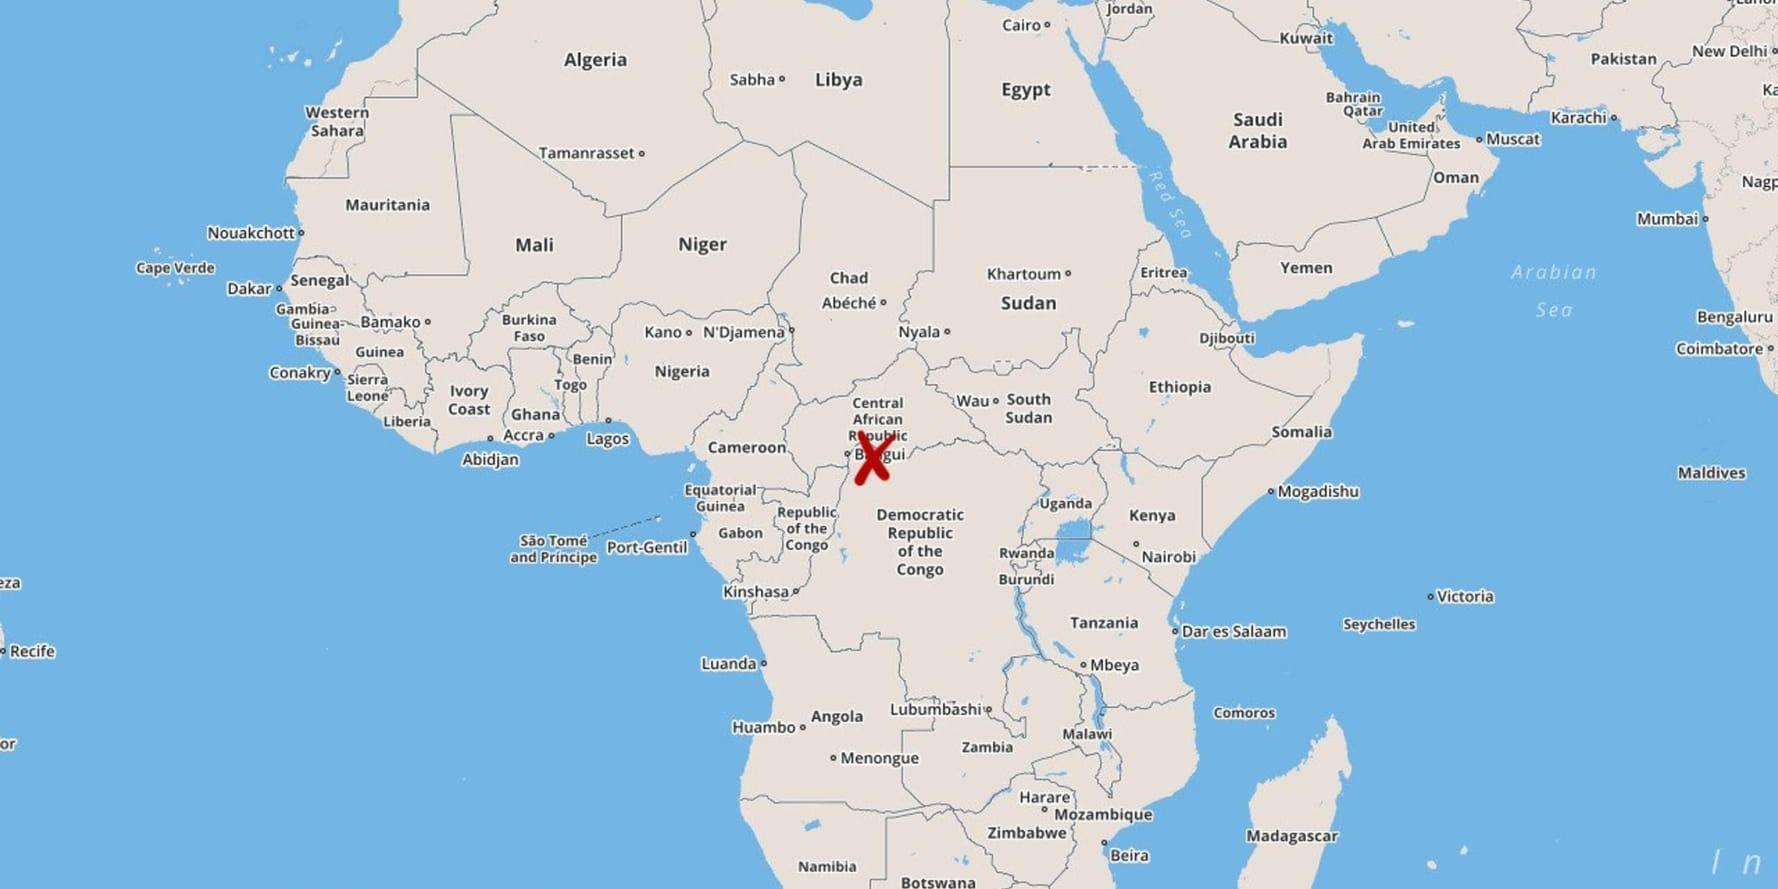 Minst 37 personer har dödats i strider mellan olika grupper i Alindao i södra Centralafrikanska republiken, enligt källor inom FN och kyrkan.